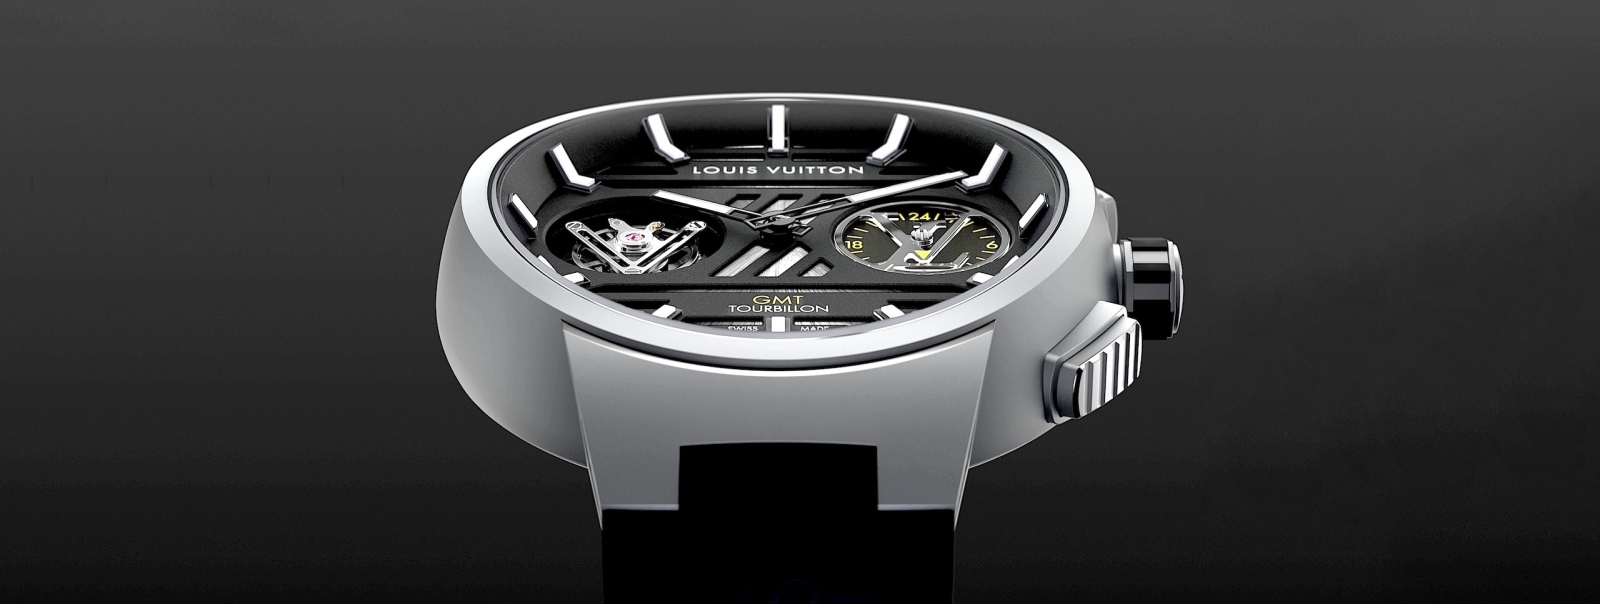 Louis Vuitton en Watches and Wonders 2021. Sorprendente y ambicioso